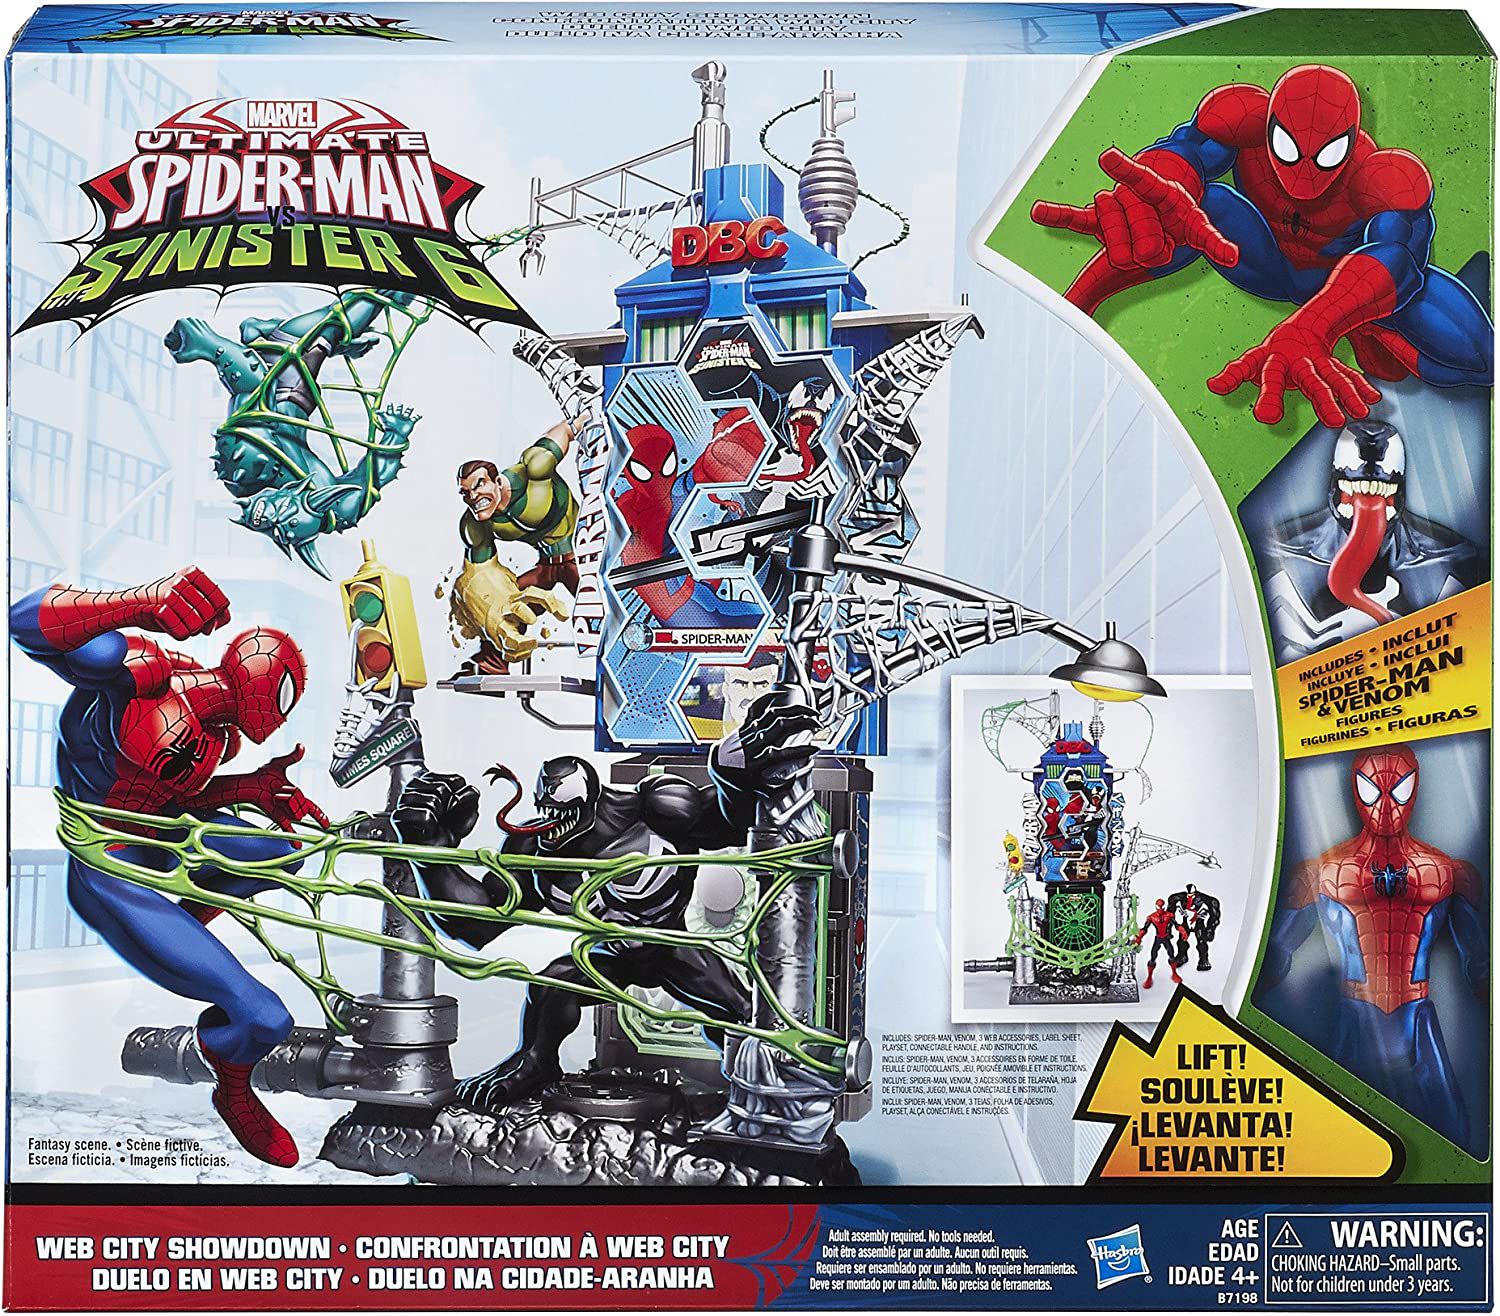 Jogo da Memória Homem Aranha Marvel - Bumerang Brinquedos